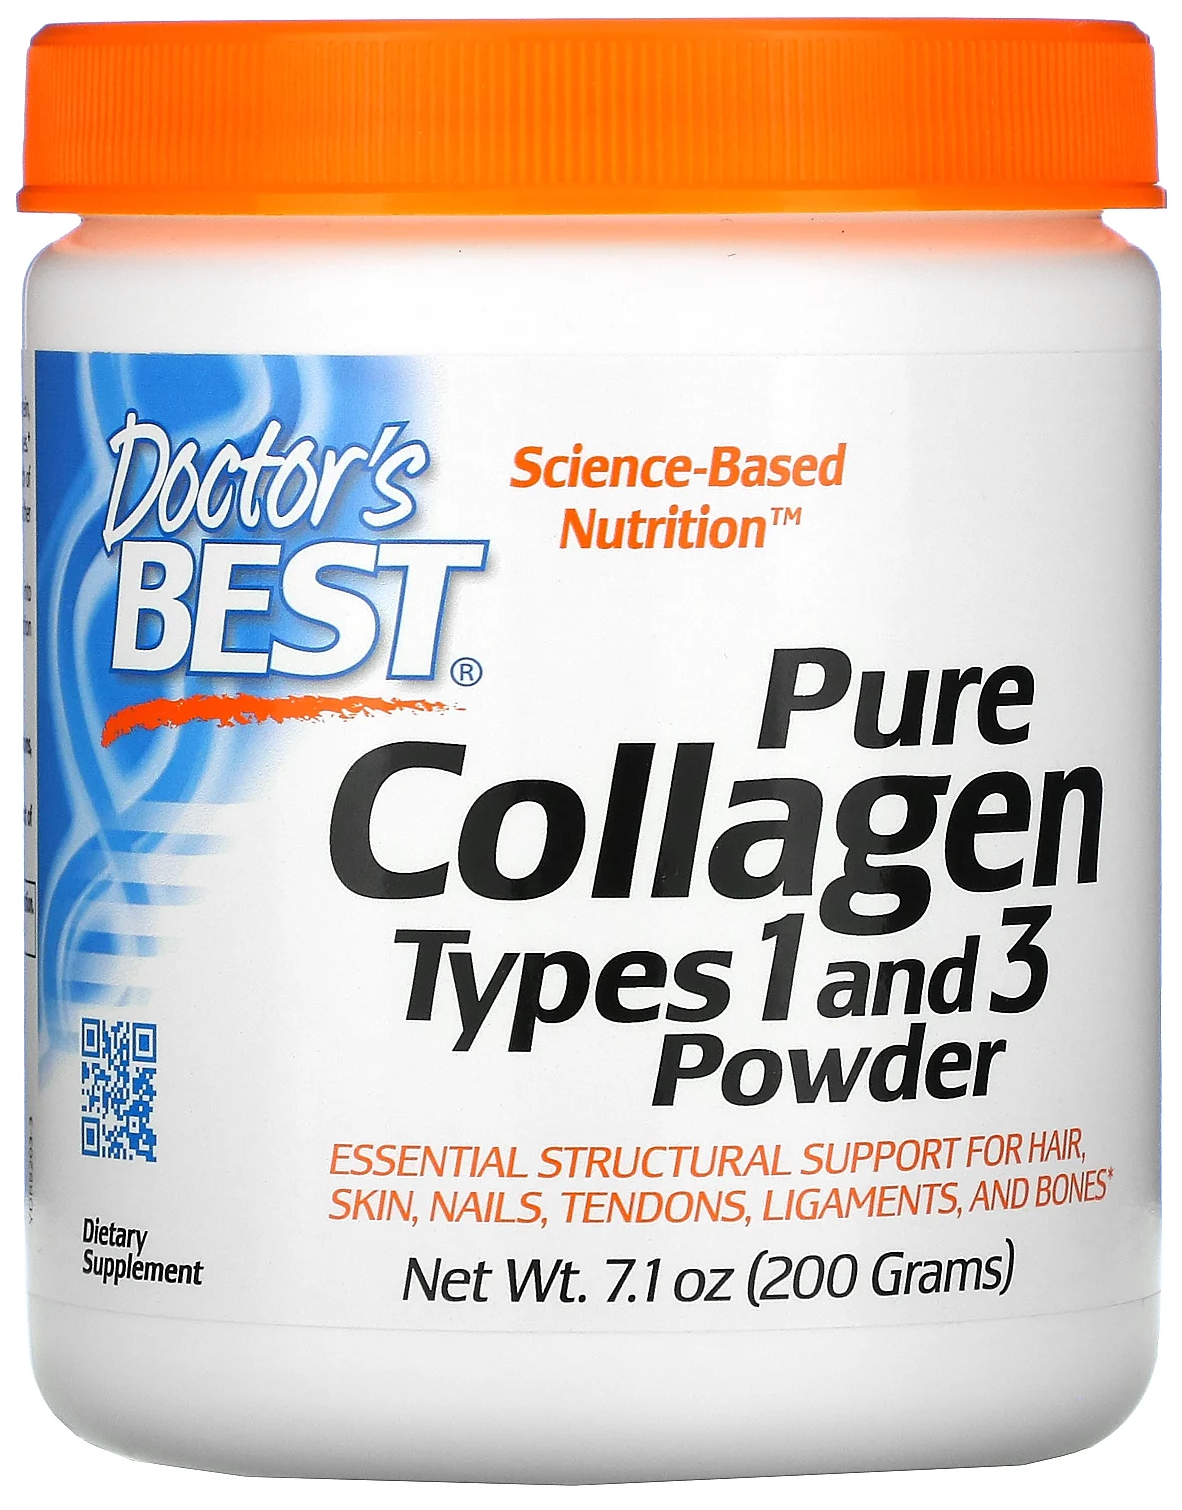 Doctor's Best Collagen Types 1 & 3 Powder (Коллаген тип 1 и 3 порошок) 200 гр